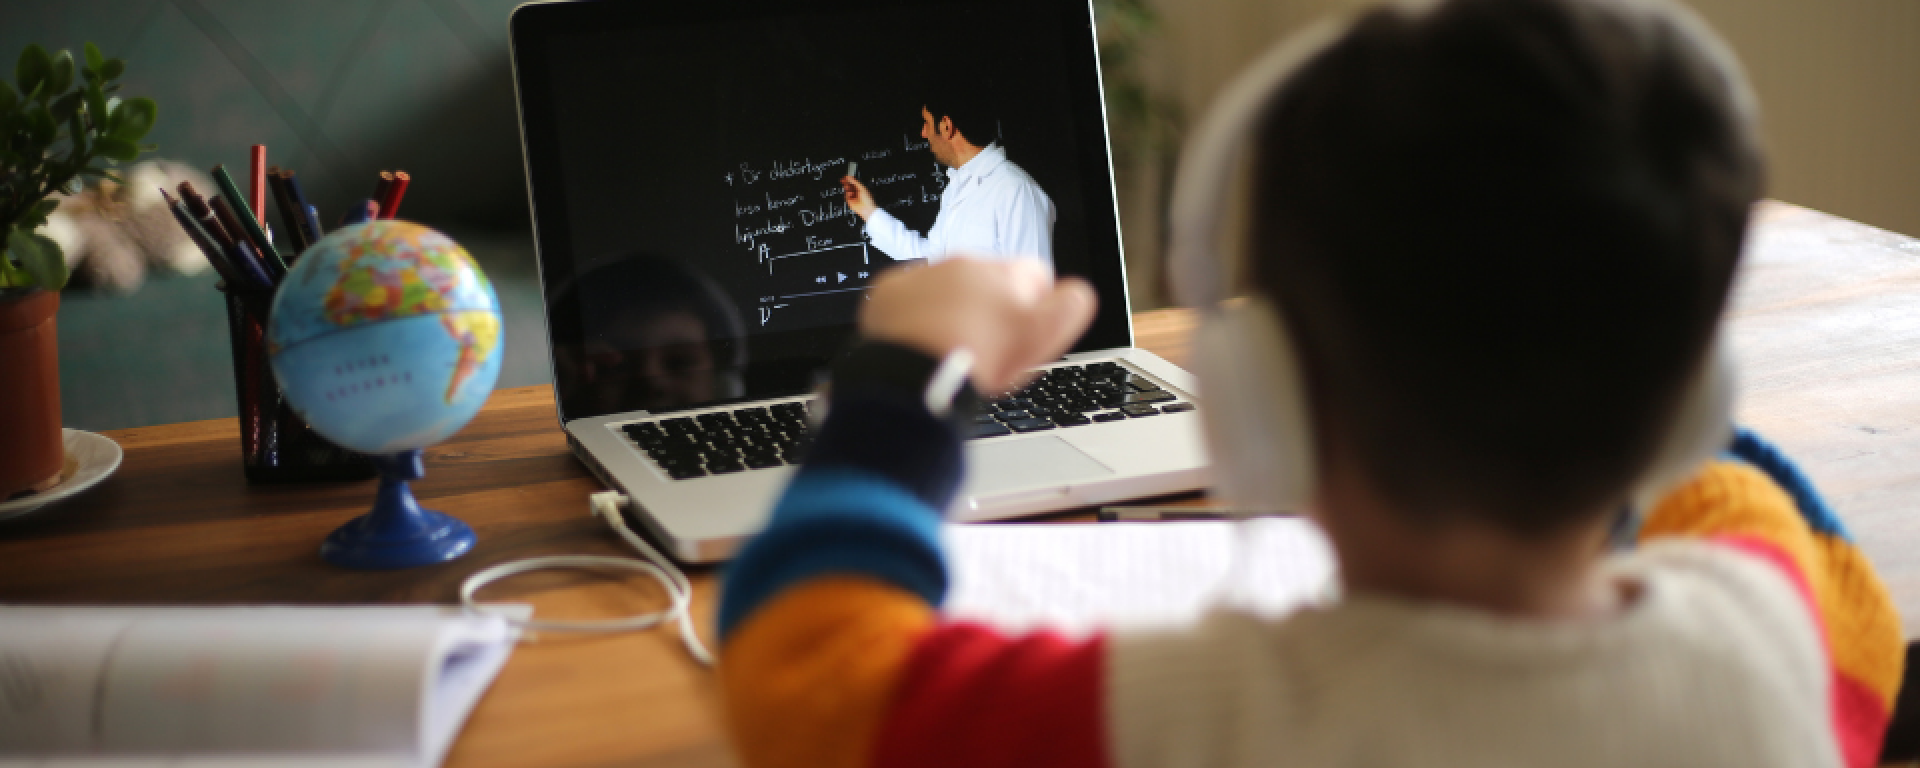 Niño de espaldas con auriculares mira hacia computadora en la que se ve un maestro dando una clase.